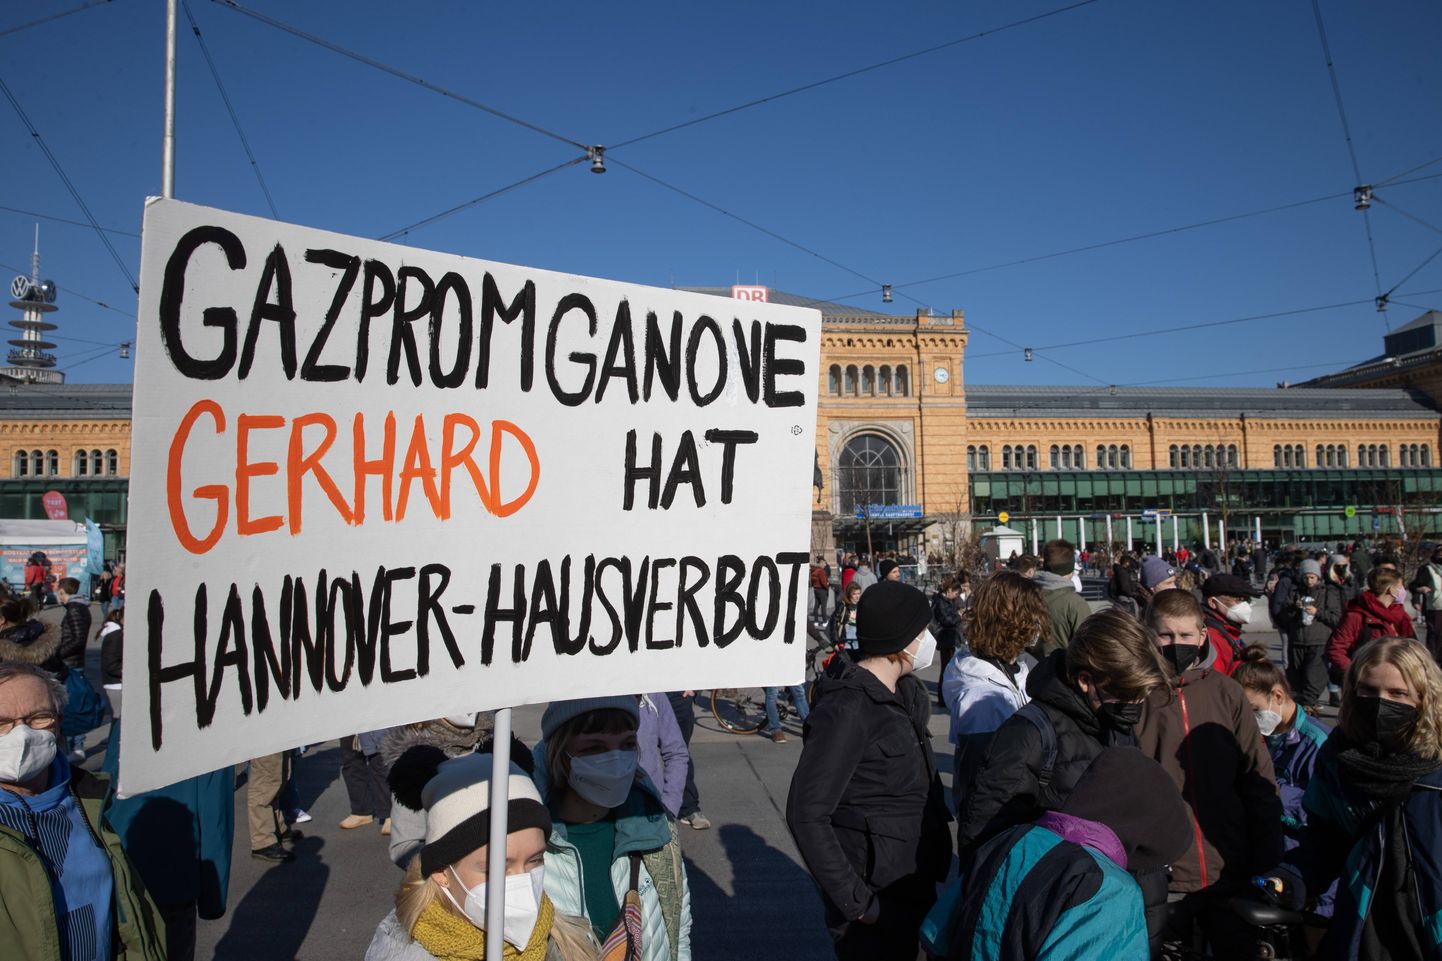 Protestijad Hannoveris hoiavad üleval Gerhard Schröderi vastast plakatit, kus seisab "Gazpromi-pätil Gerhardil on Hannoveri sisenemise keeld"